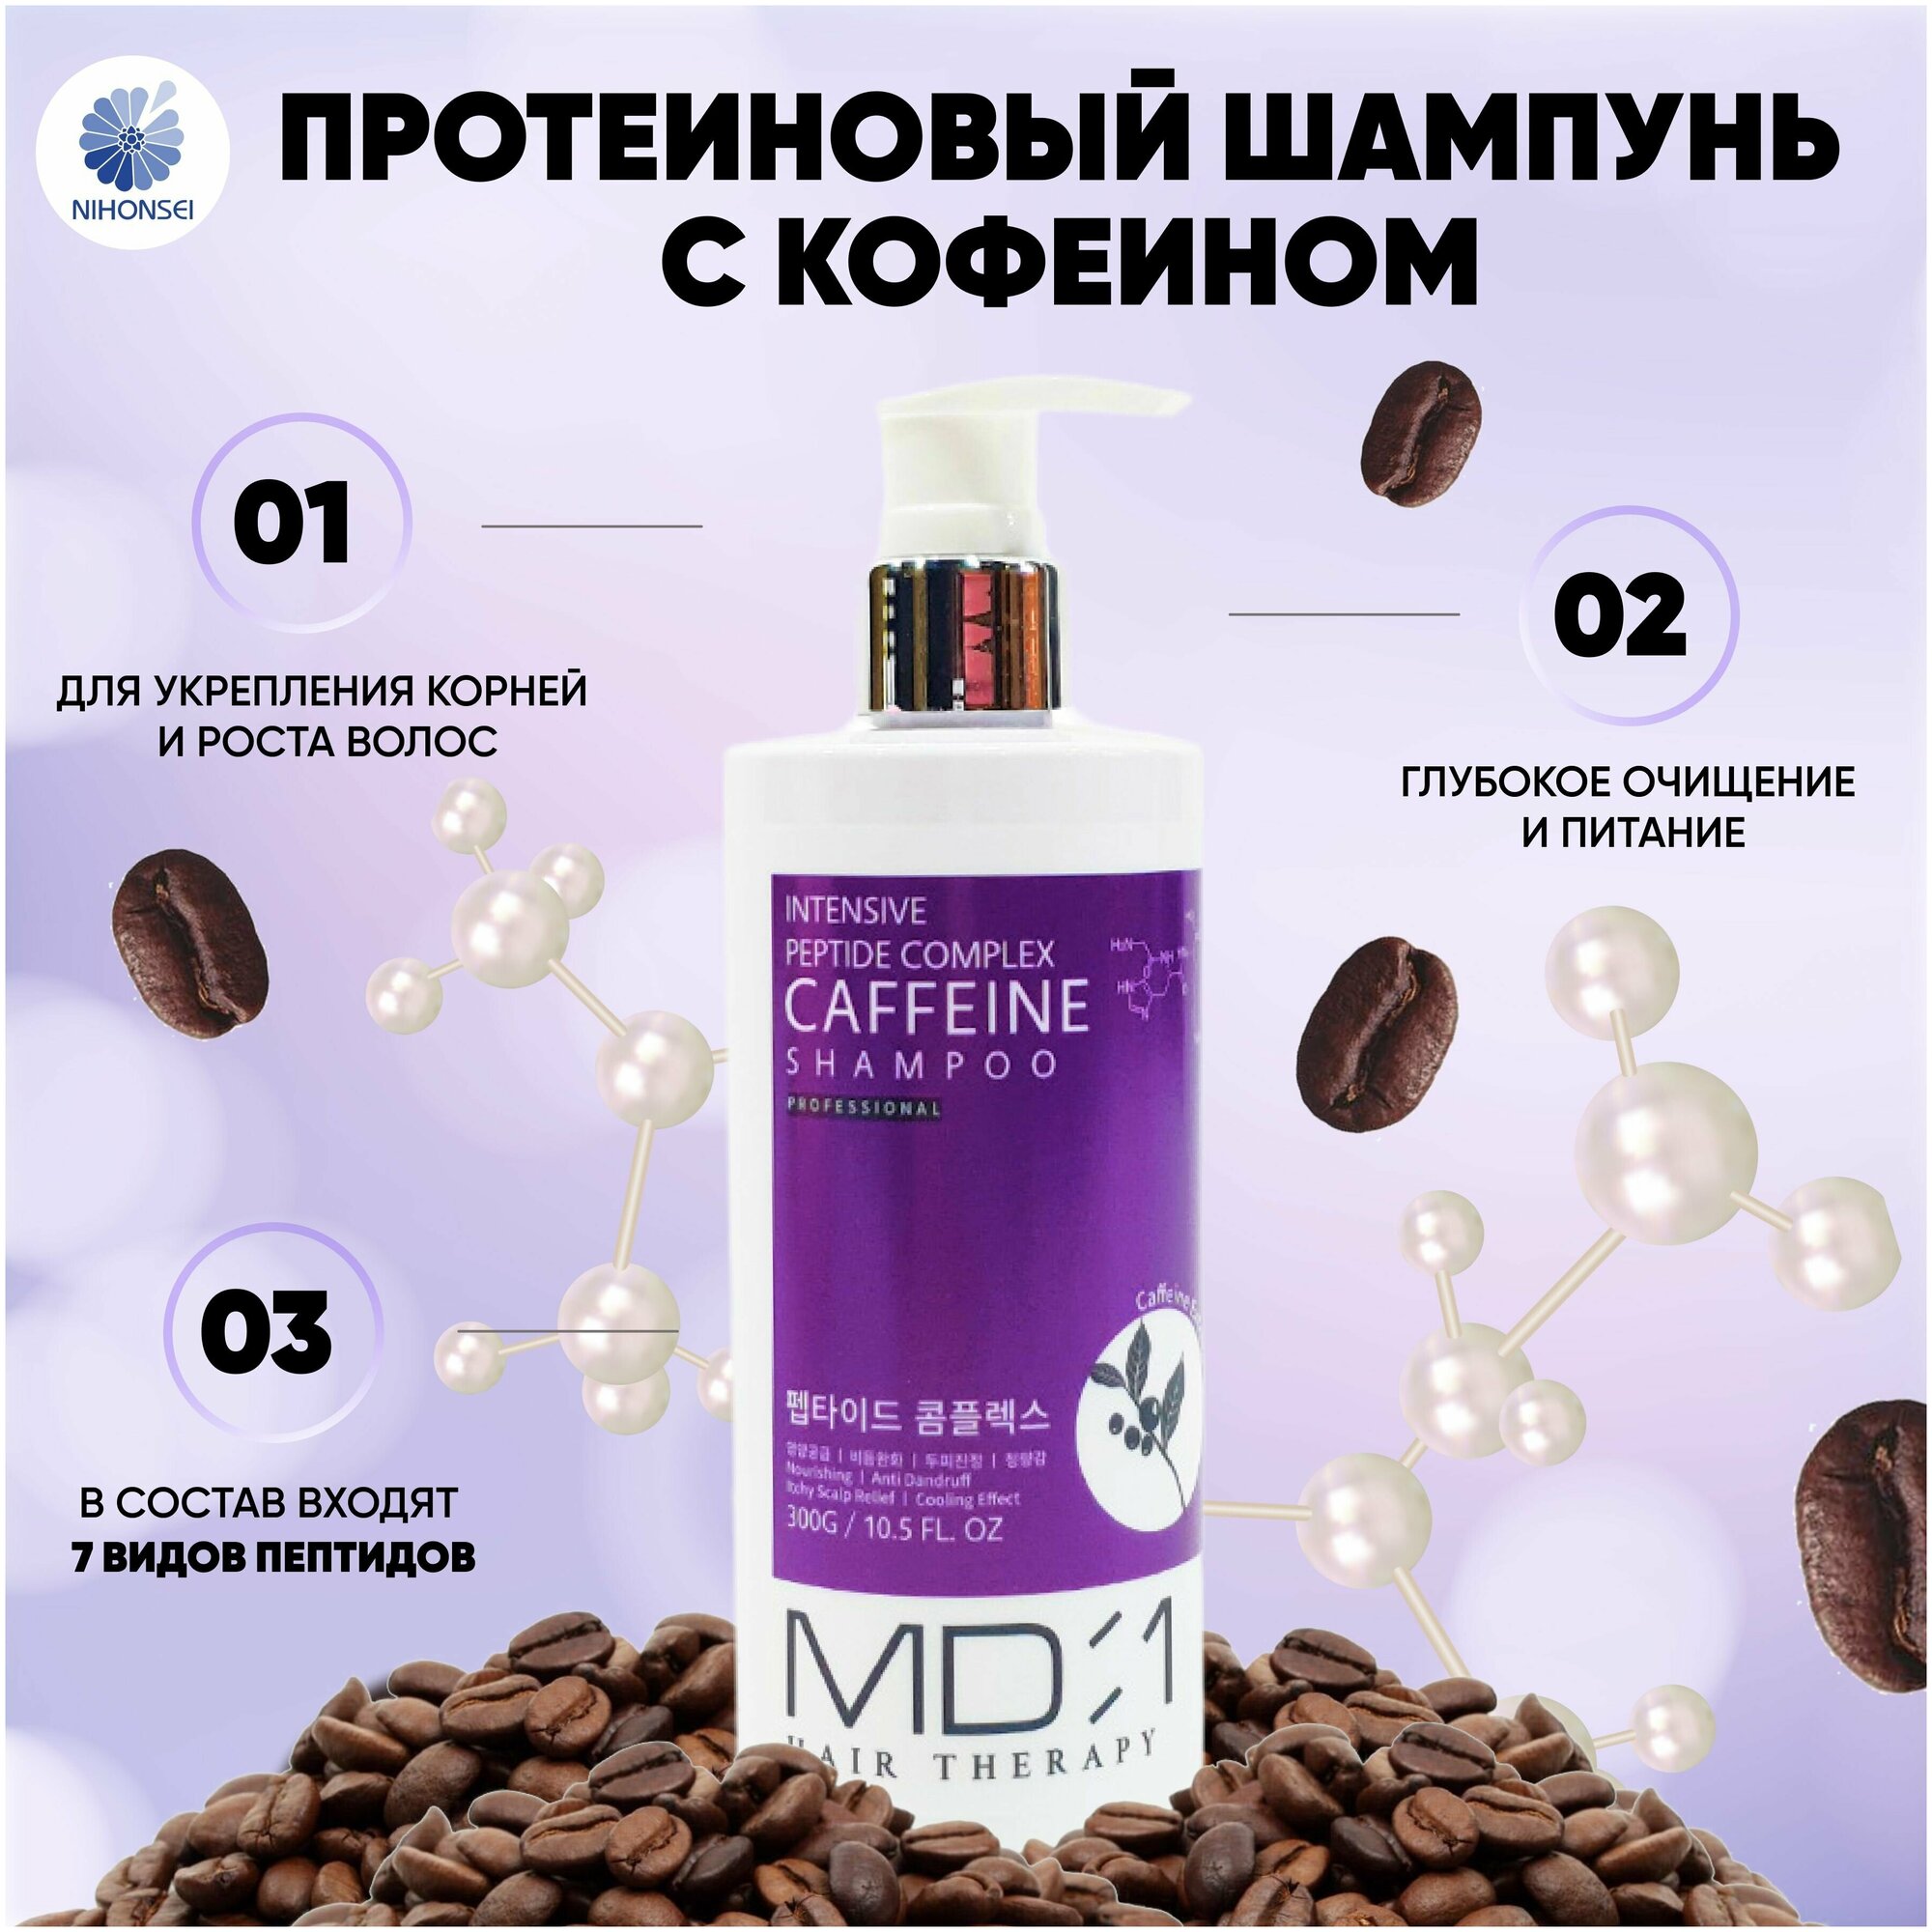 MD:1 Пептидный шампунь с кофеином против выпадения и перхоти Intensive Peptide Caffeine Shampoo, 300 мл Корея / Корейская косметика по уходу за волосами, протеиновый шампунь